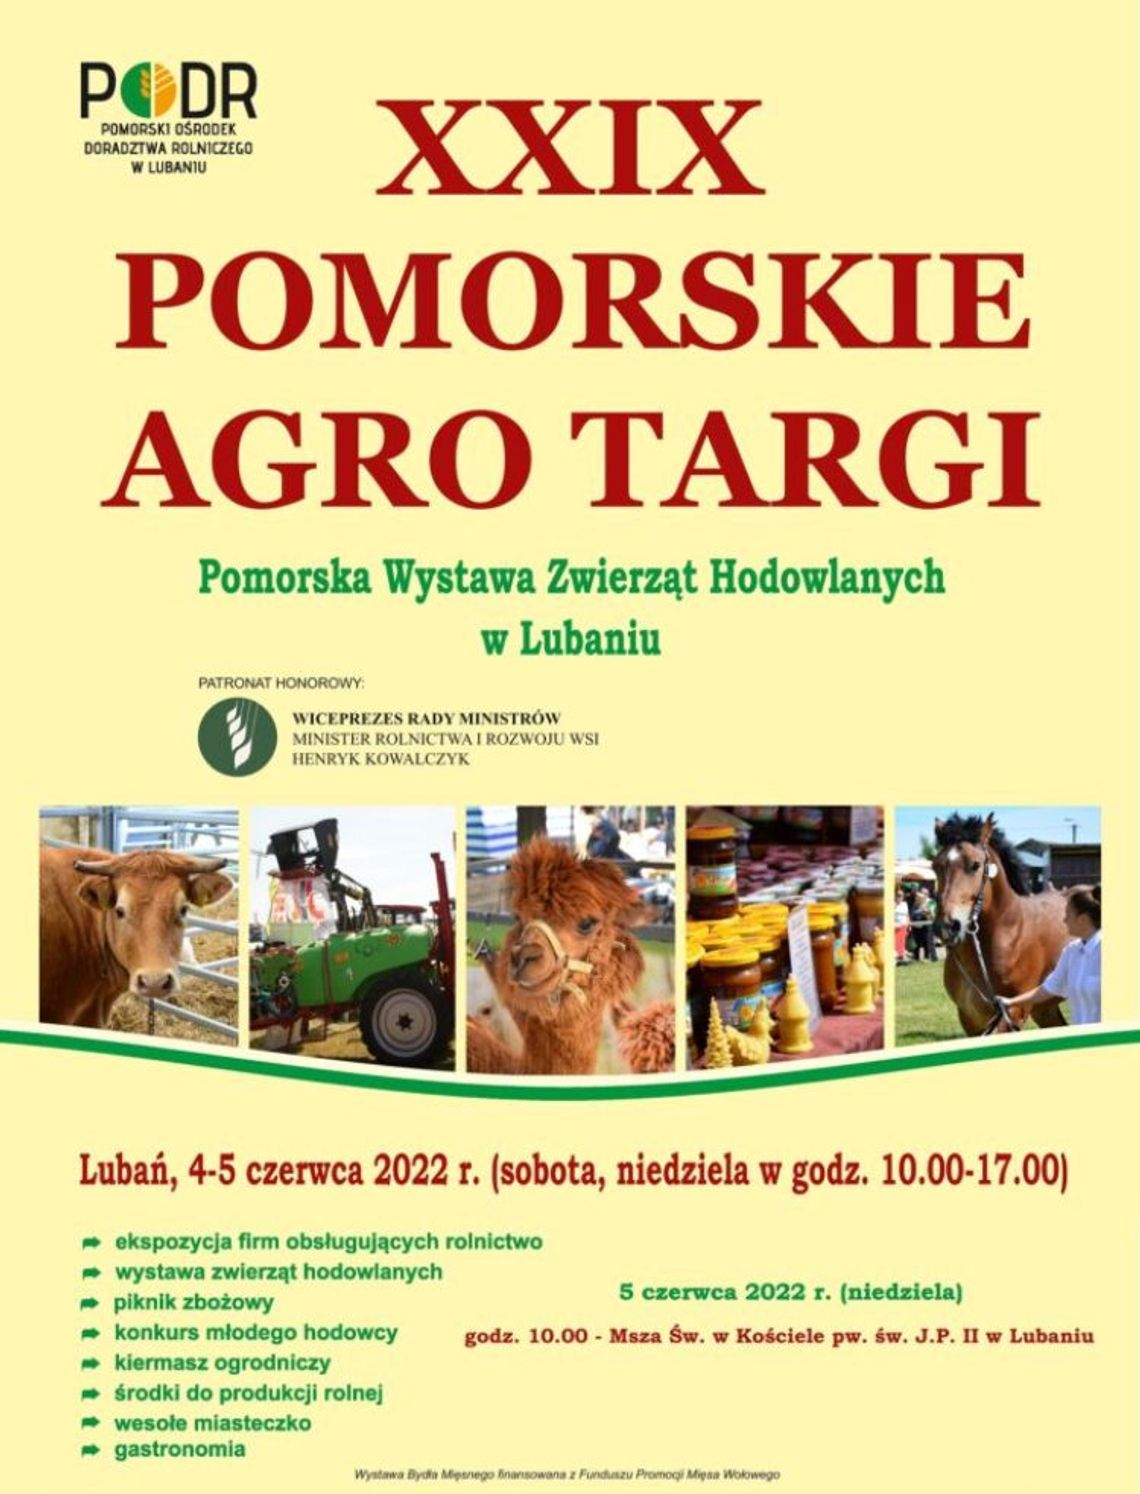 XXIX Pomorskie Agro Targi w Lubaniu już w najbliższy weekend